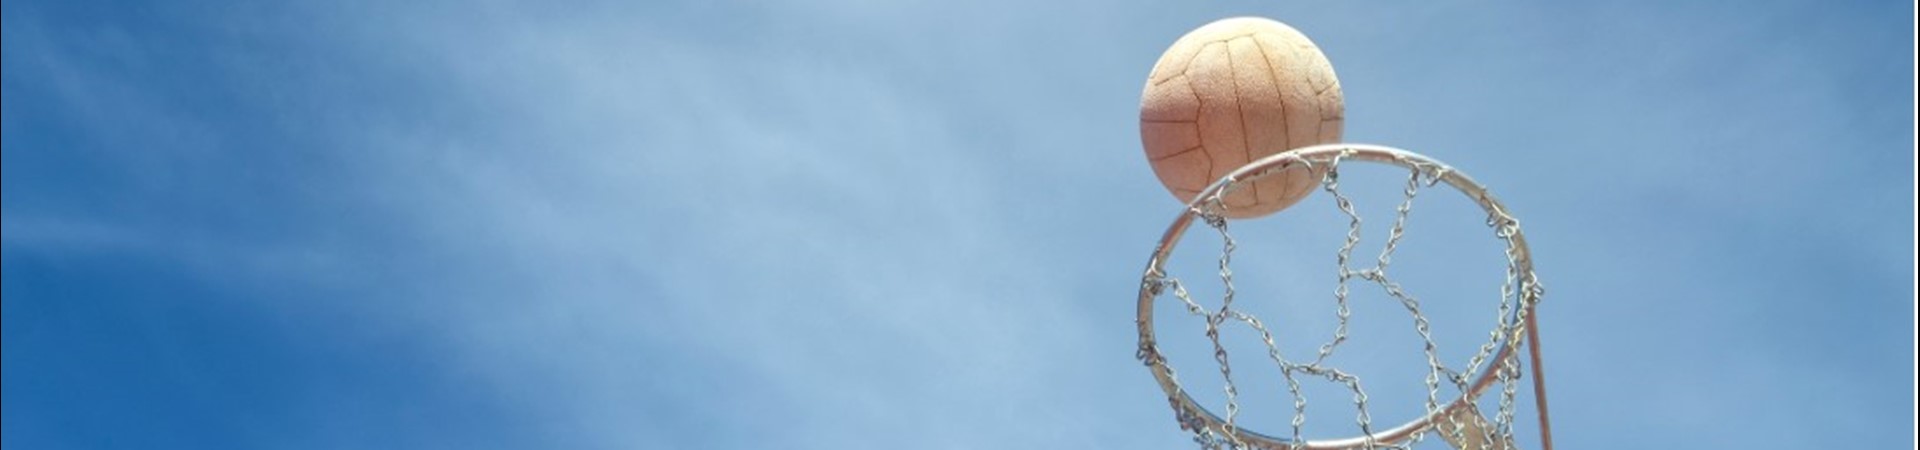 Netball going into a netball hoop